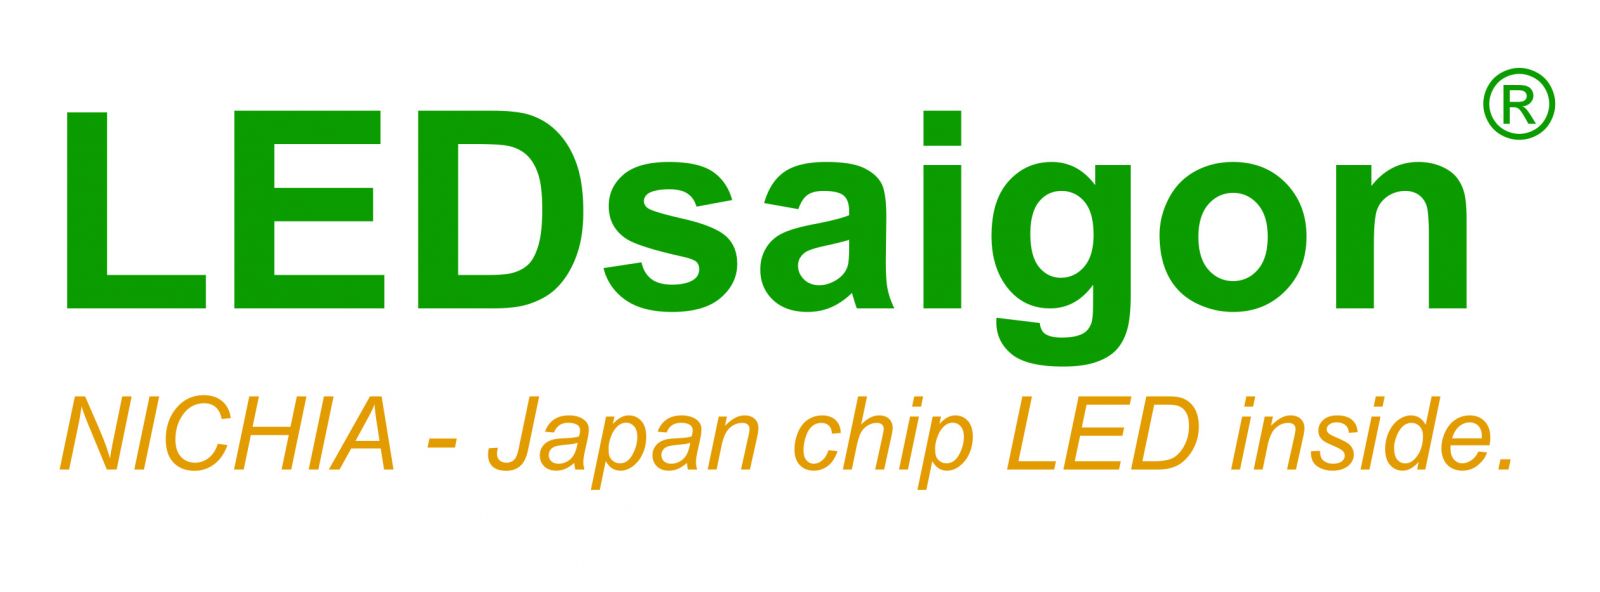 Đèn LED 50W chiếu quảng cáo chip Nhật Bản